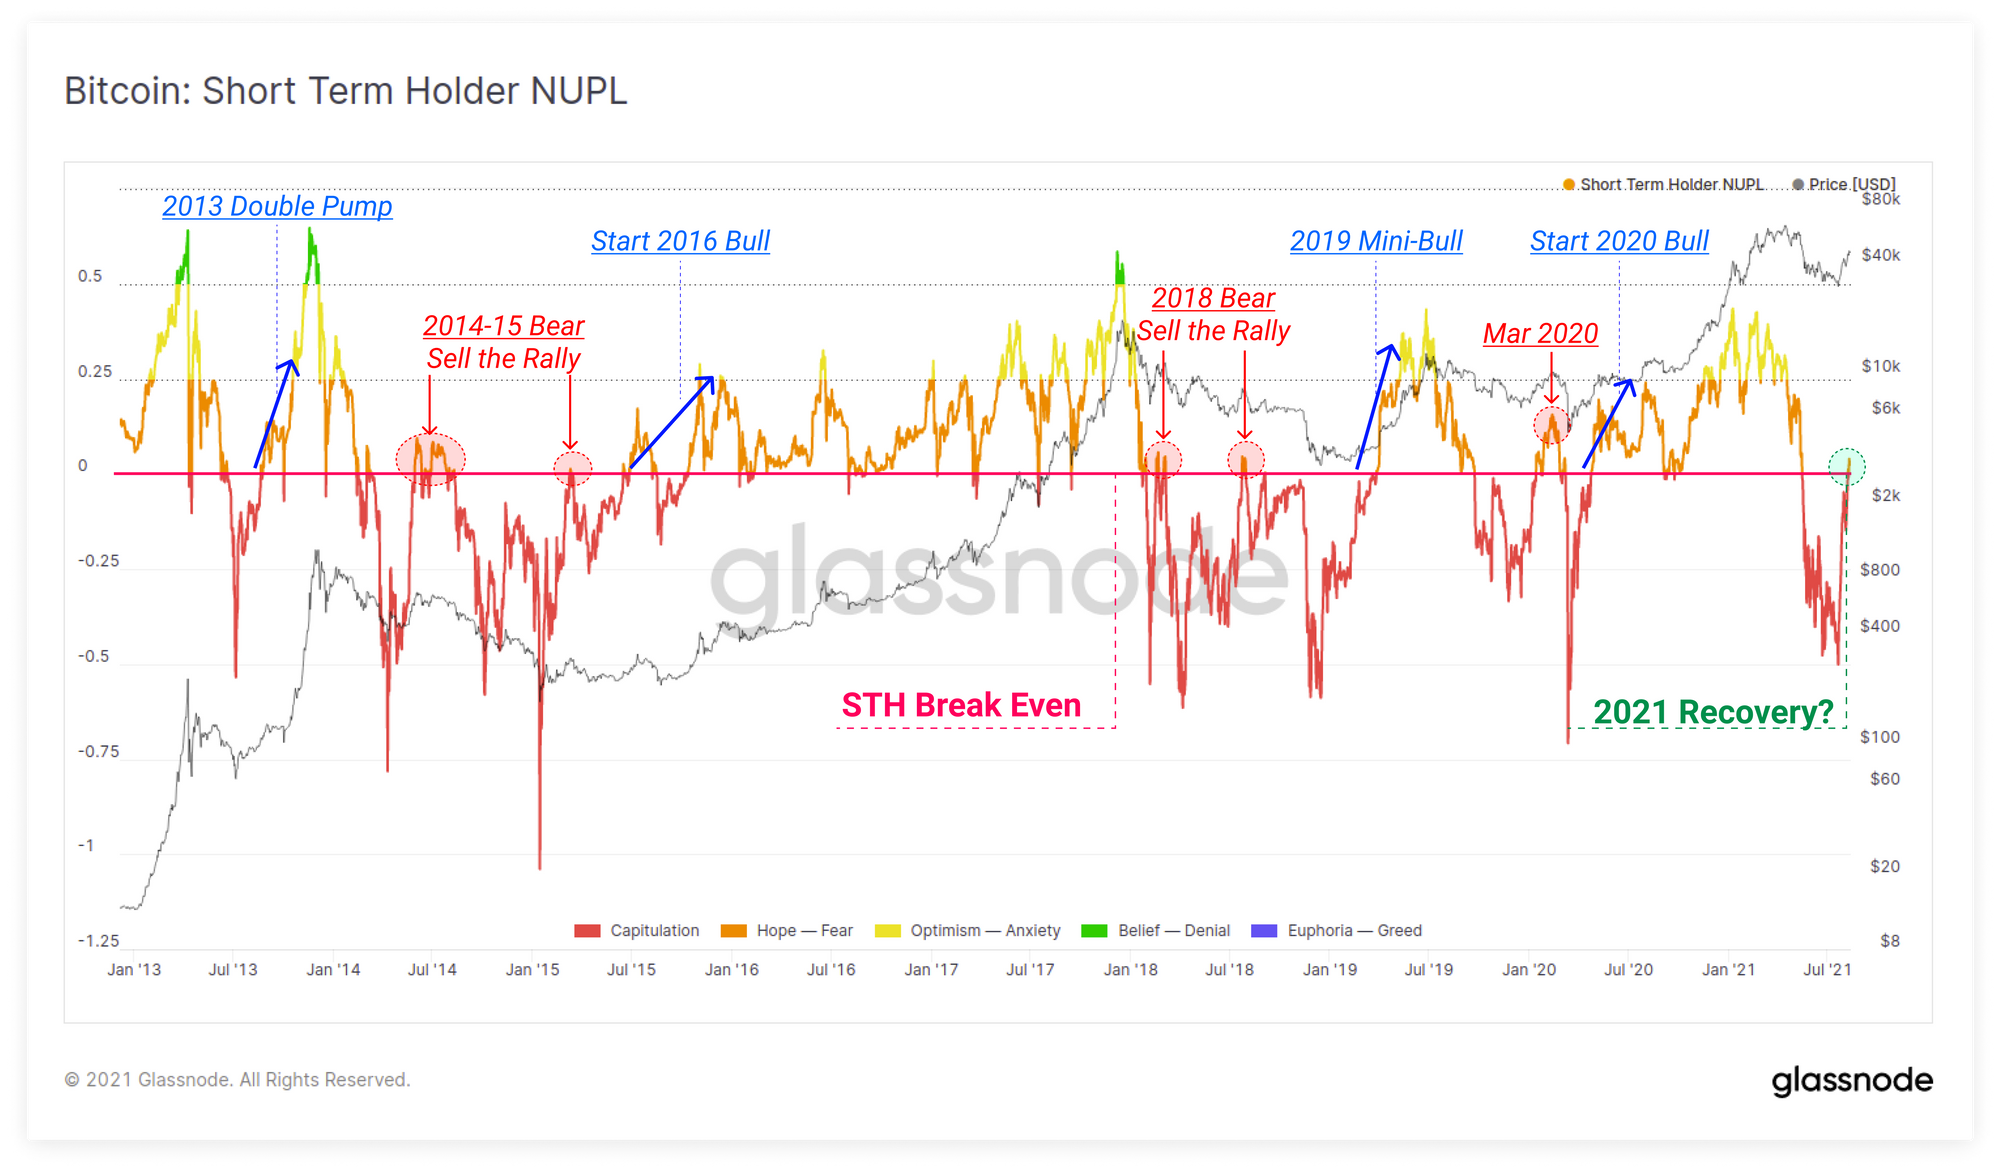 [STH-NUPL Live Chart from Glassnode - "Semelhante à métrica NUPL padrão, esses eventos são incomuns, mas tendem a preceder movimentos explosivos em um mercado de baixa ou alta"]